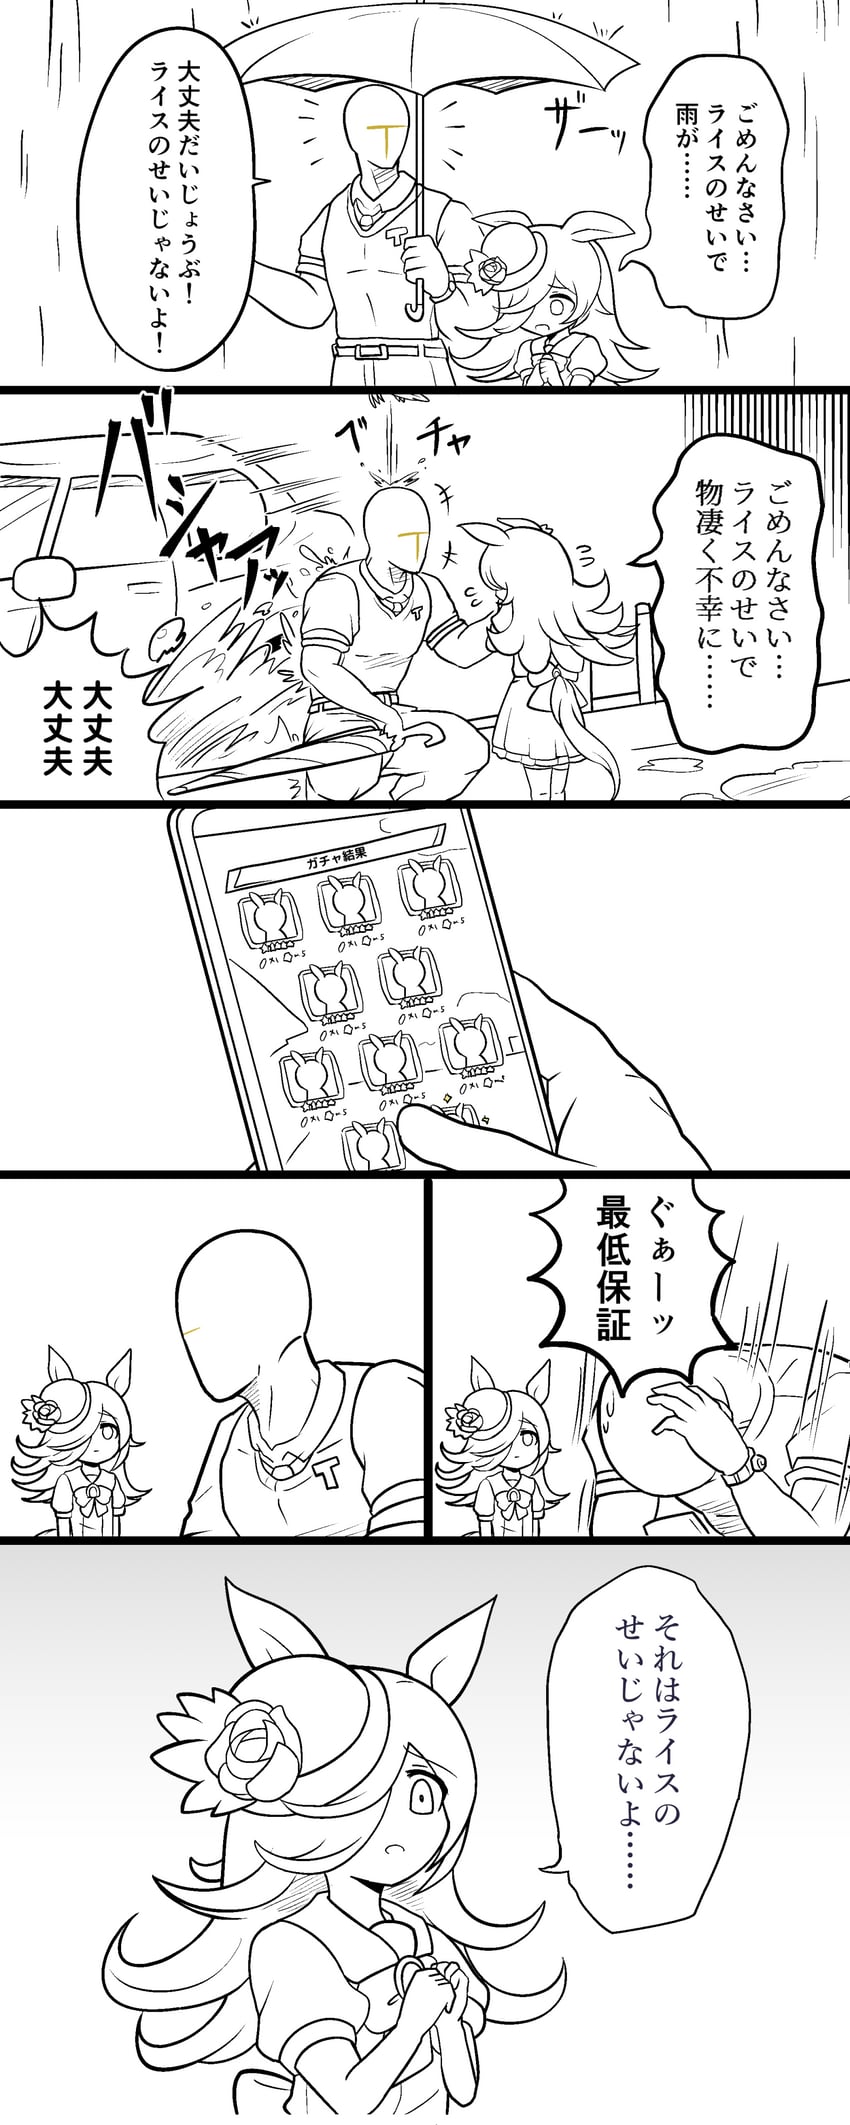 trainer, rice shower, and t-head trainer (umamusume) drawn by morinokino1